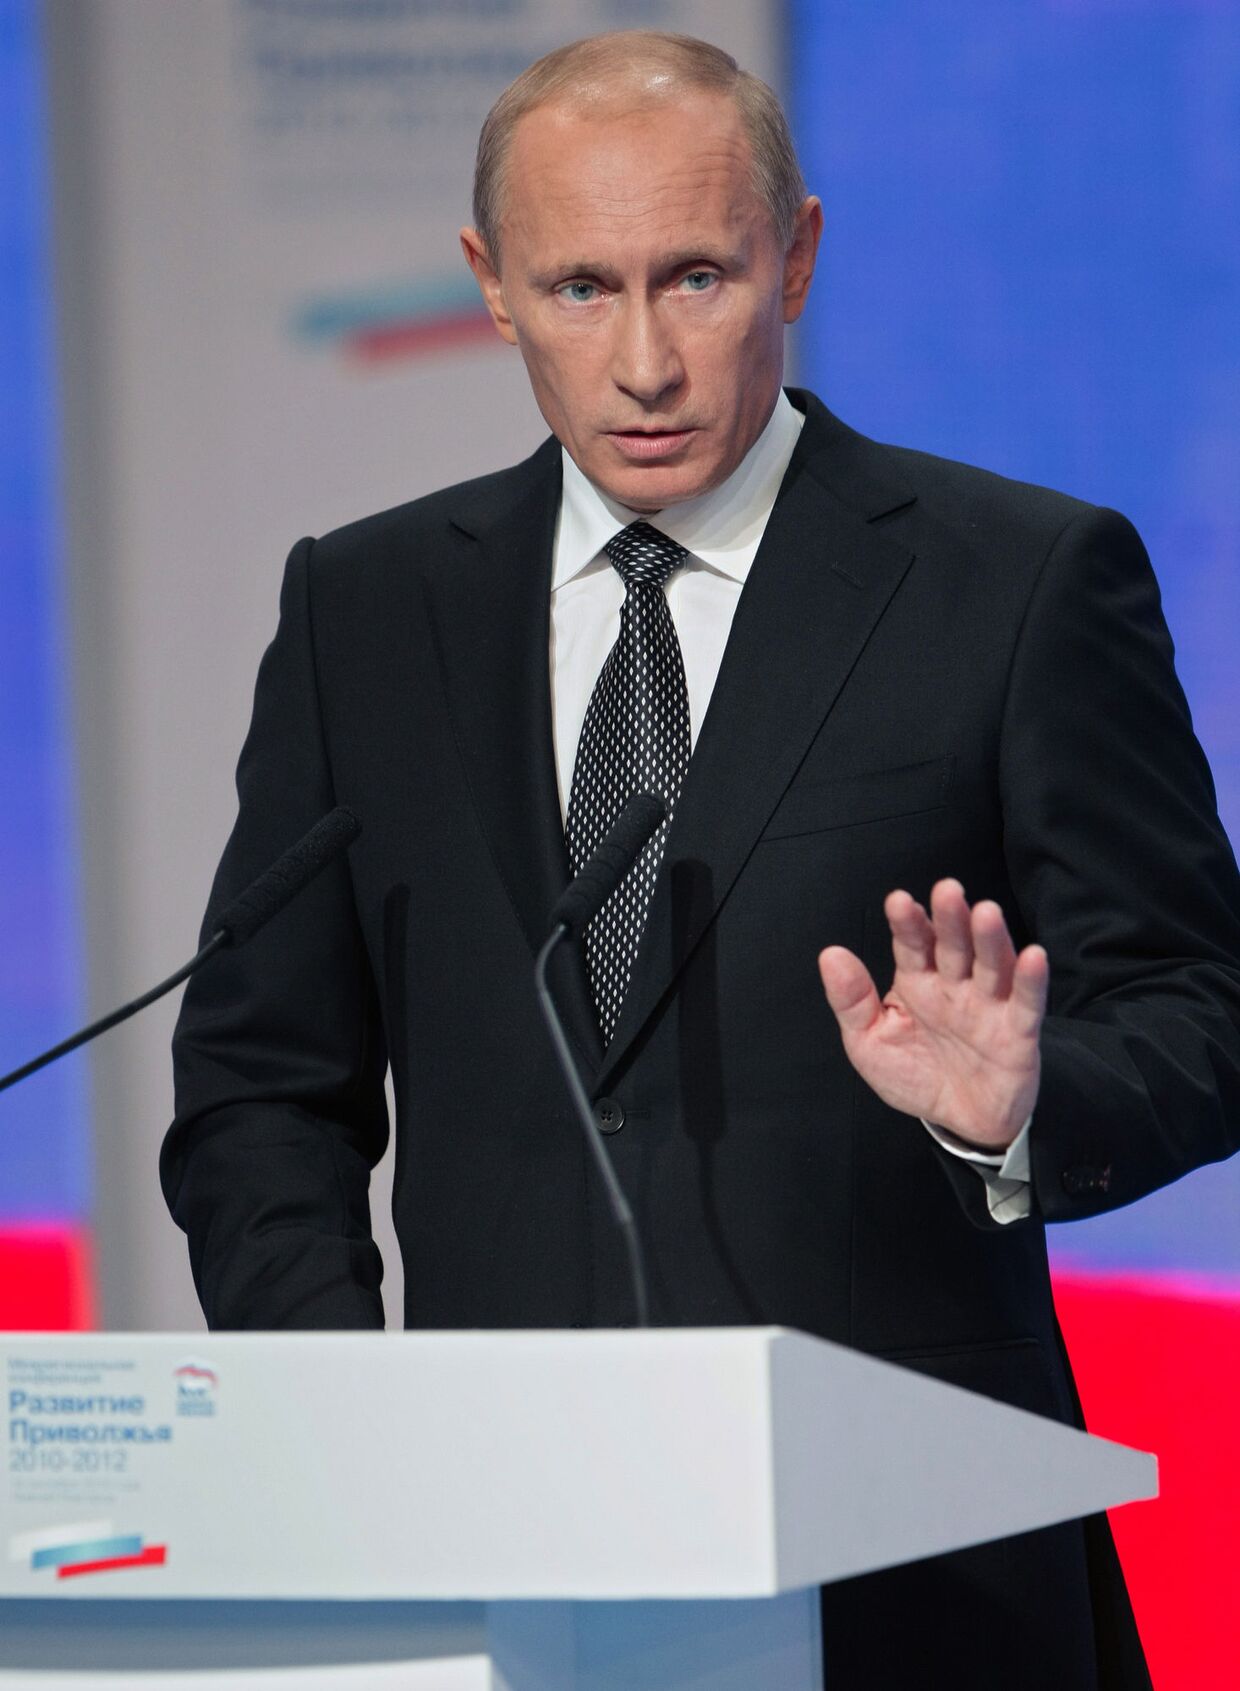 Владимир Путин принял участие в заседании конференции региональных отделений ЕР ПФО